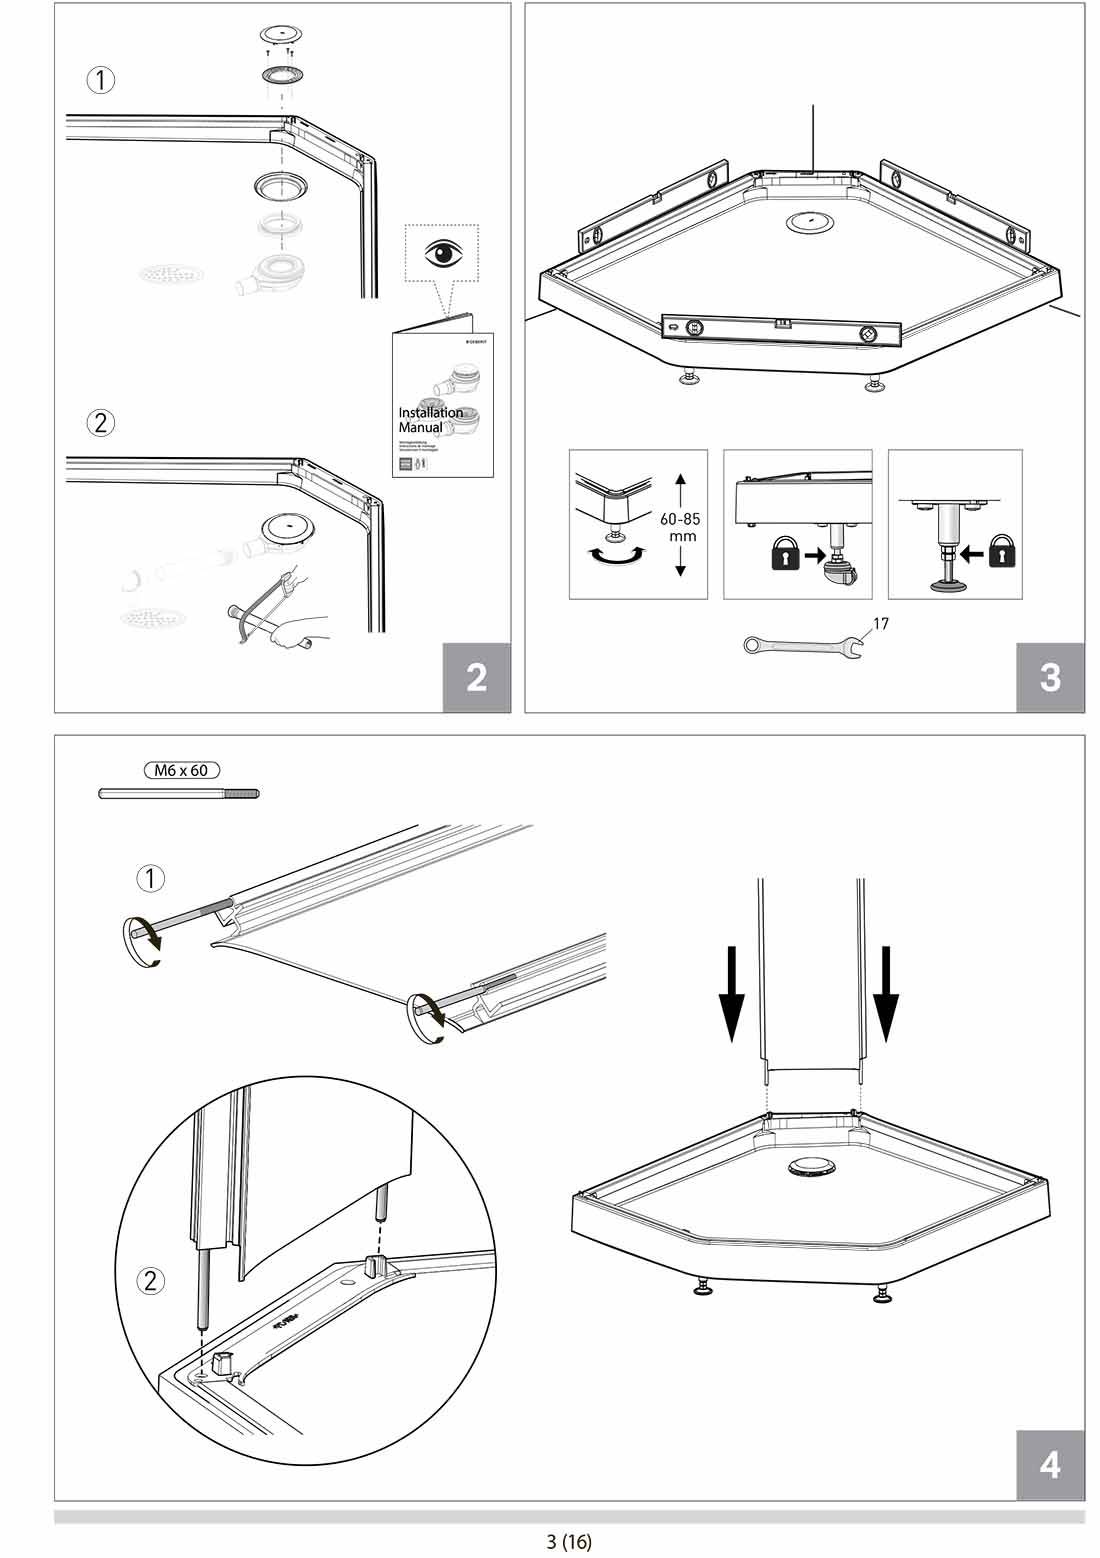 Cборка душевой кабины: инструкция как правильно собрать кабинку самостоятельно, как собирается душ, пошаговая схема по сбору